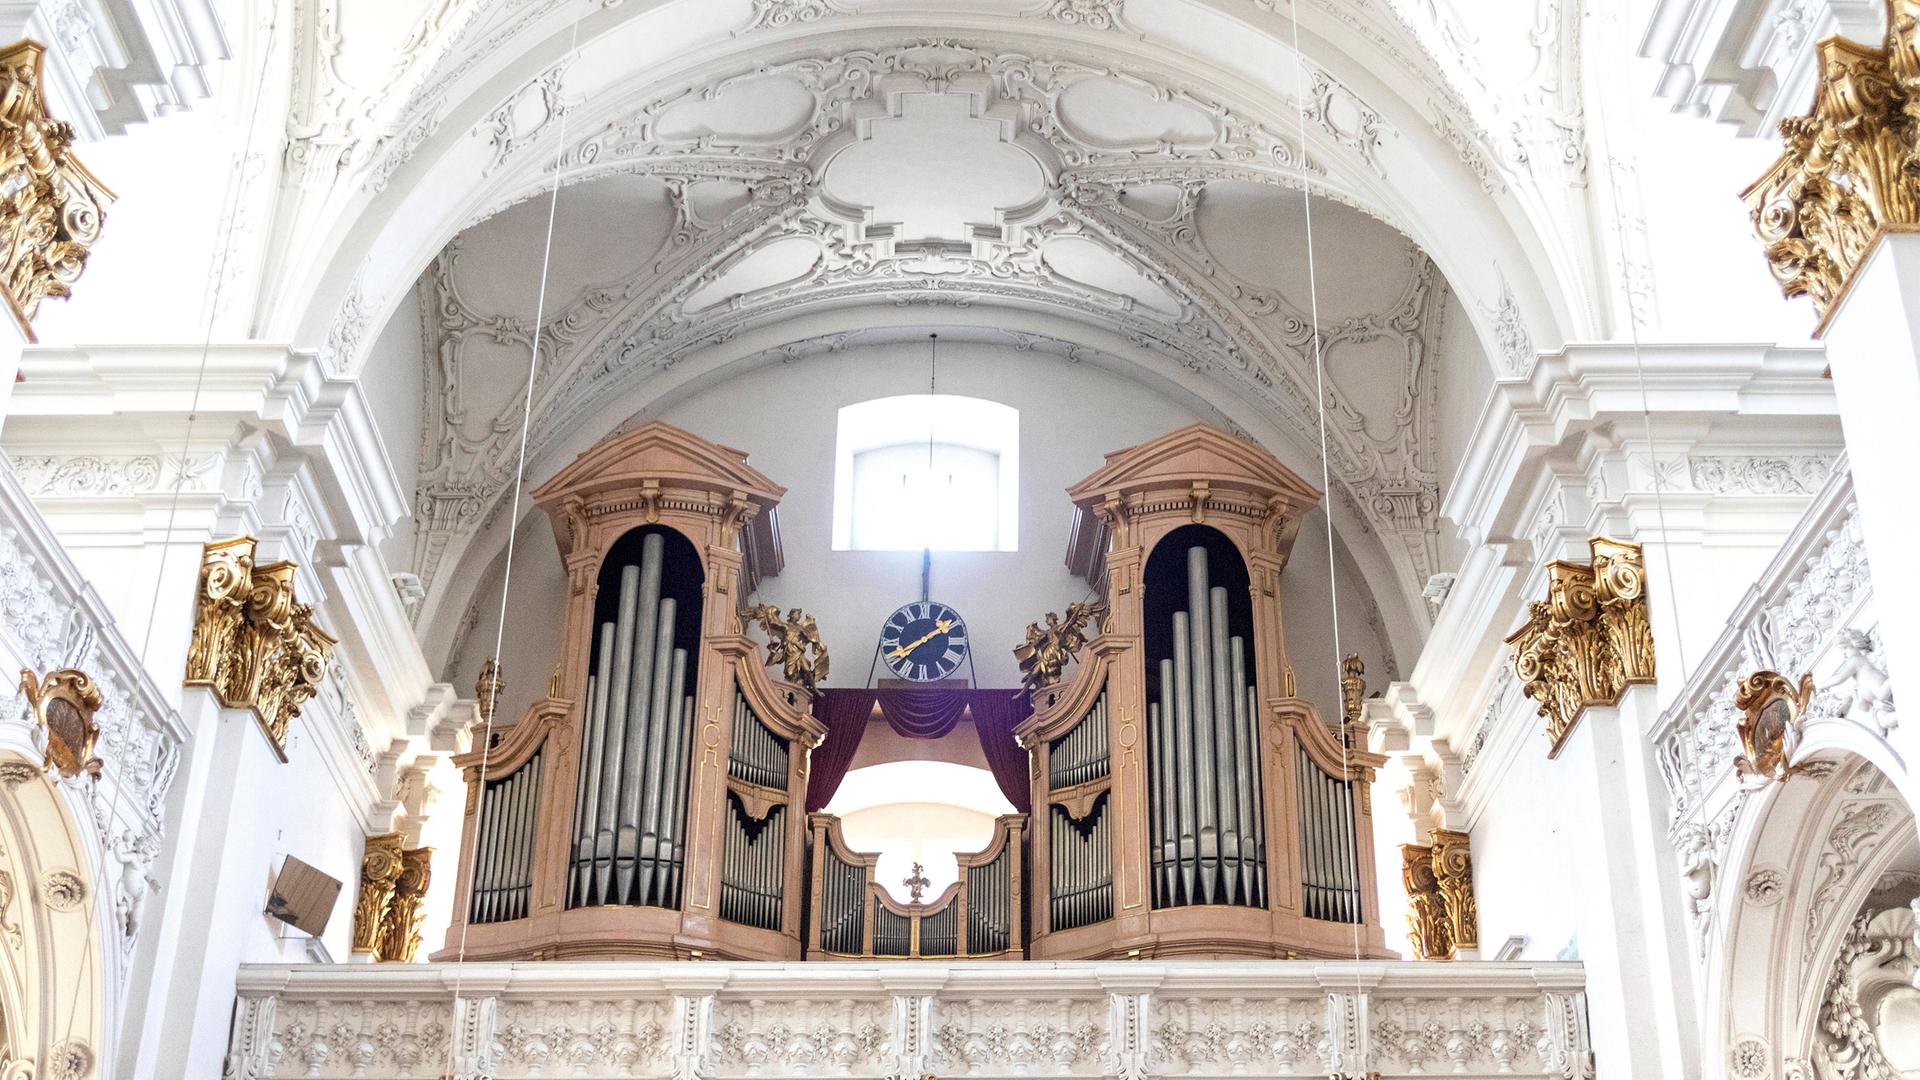 Die Vorderansicht eine Orgel, man sieht die großen silbernen Pfeifen. Die Orgel steht in einer großen Kirche in Linz. 